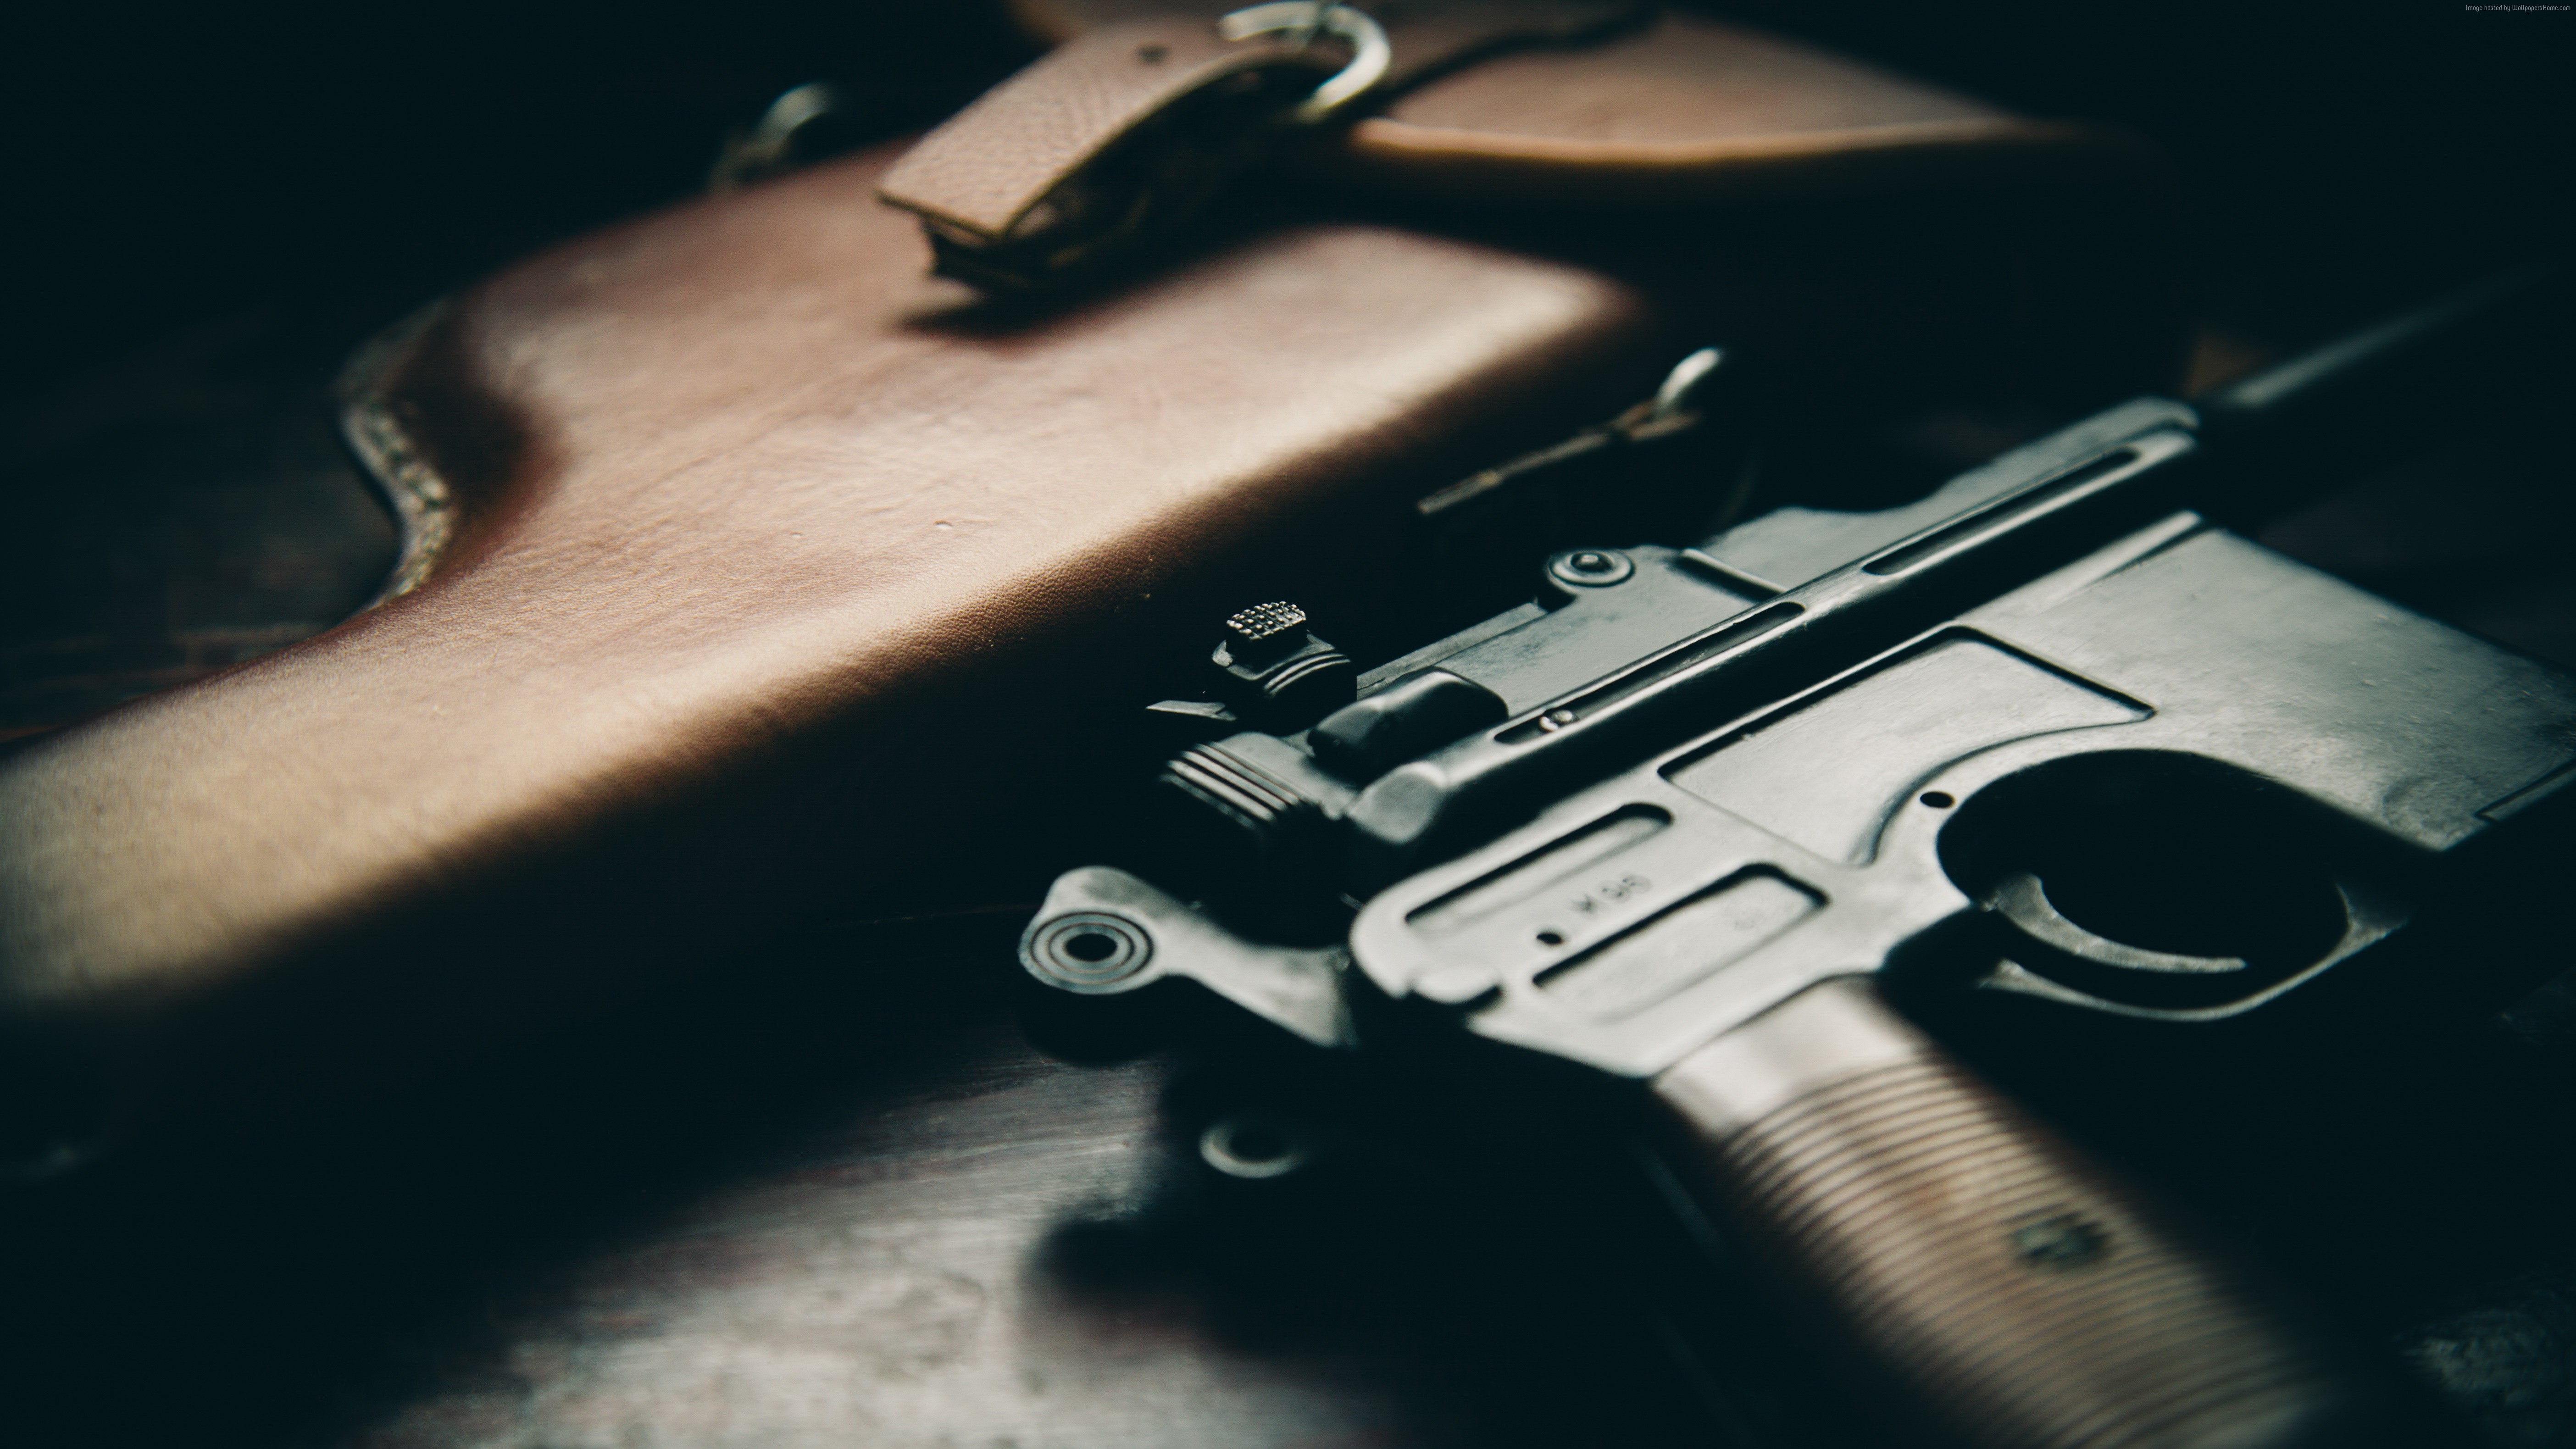 Mauser C96 Pistol HD wallpapers, Desktop wallpaper - most viewed